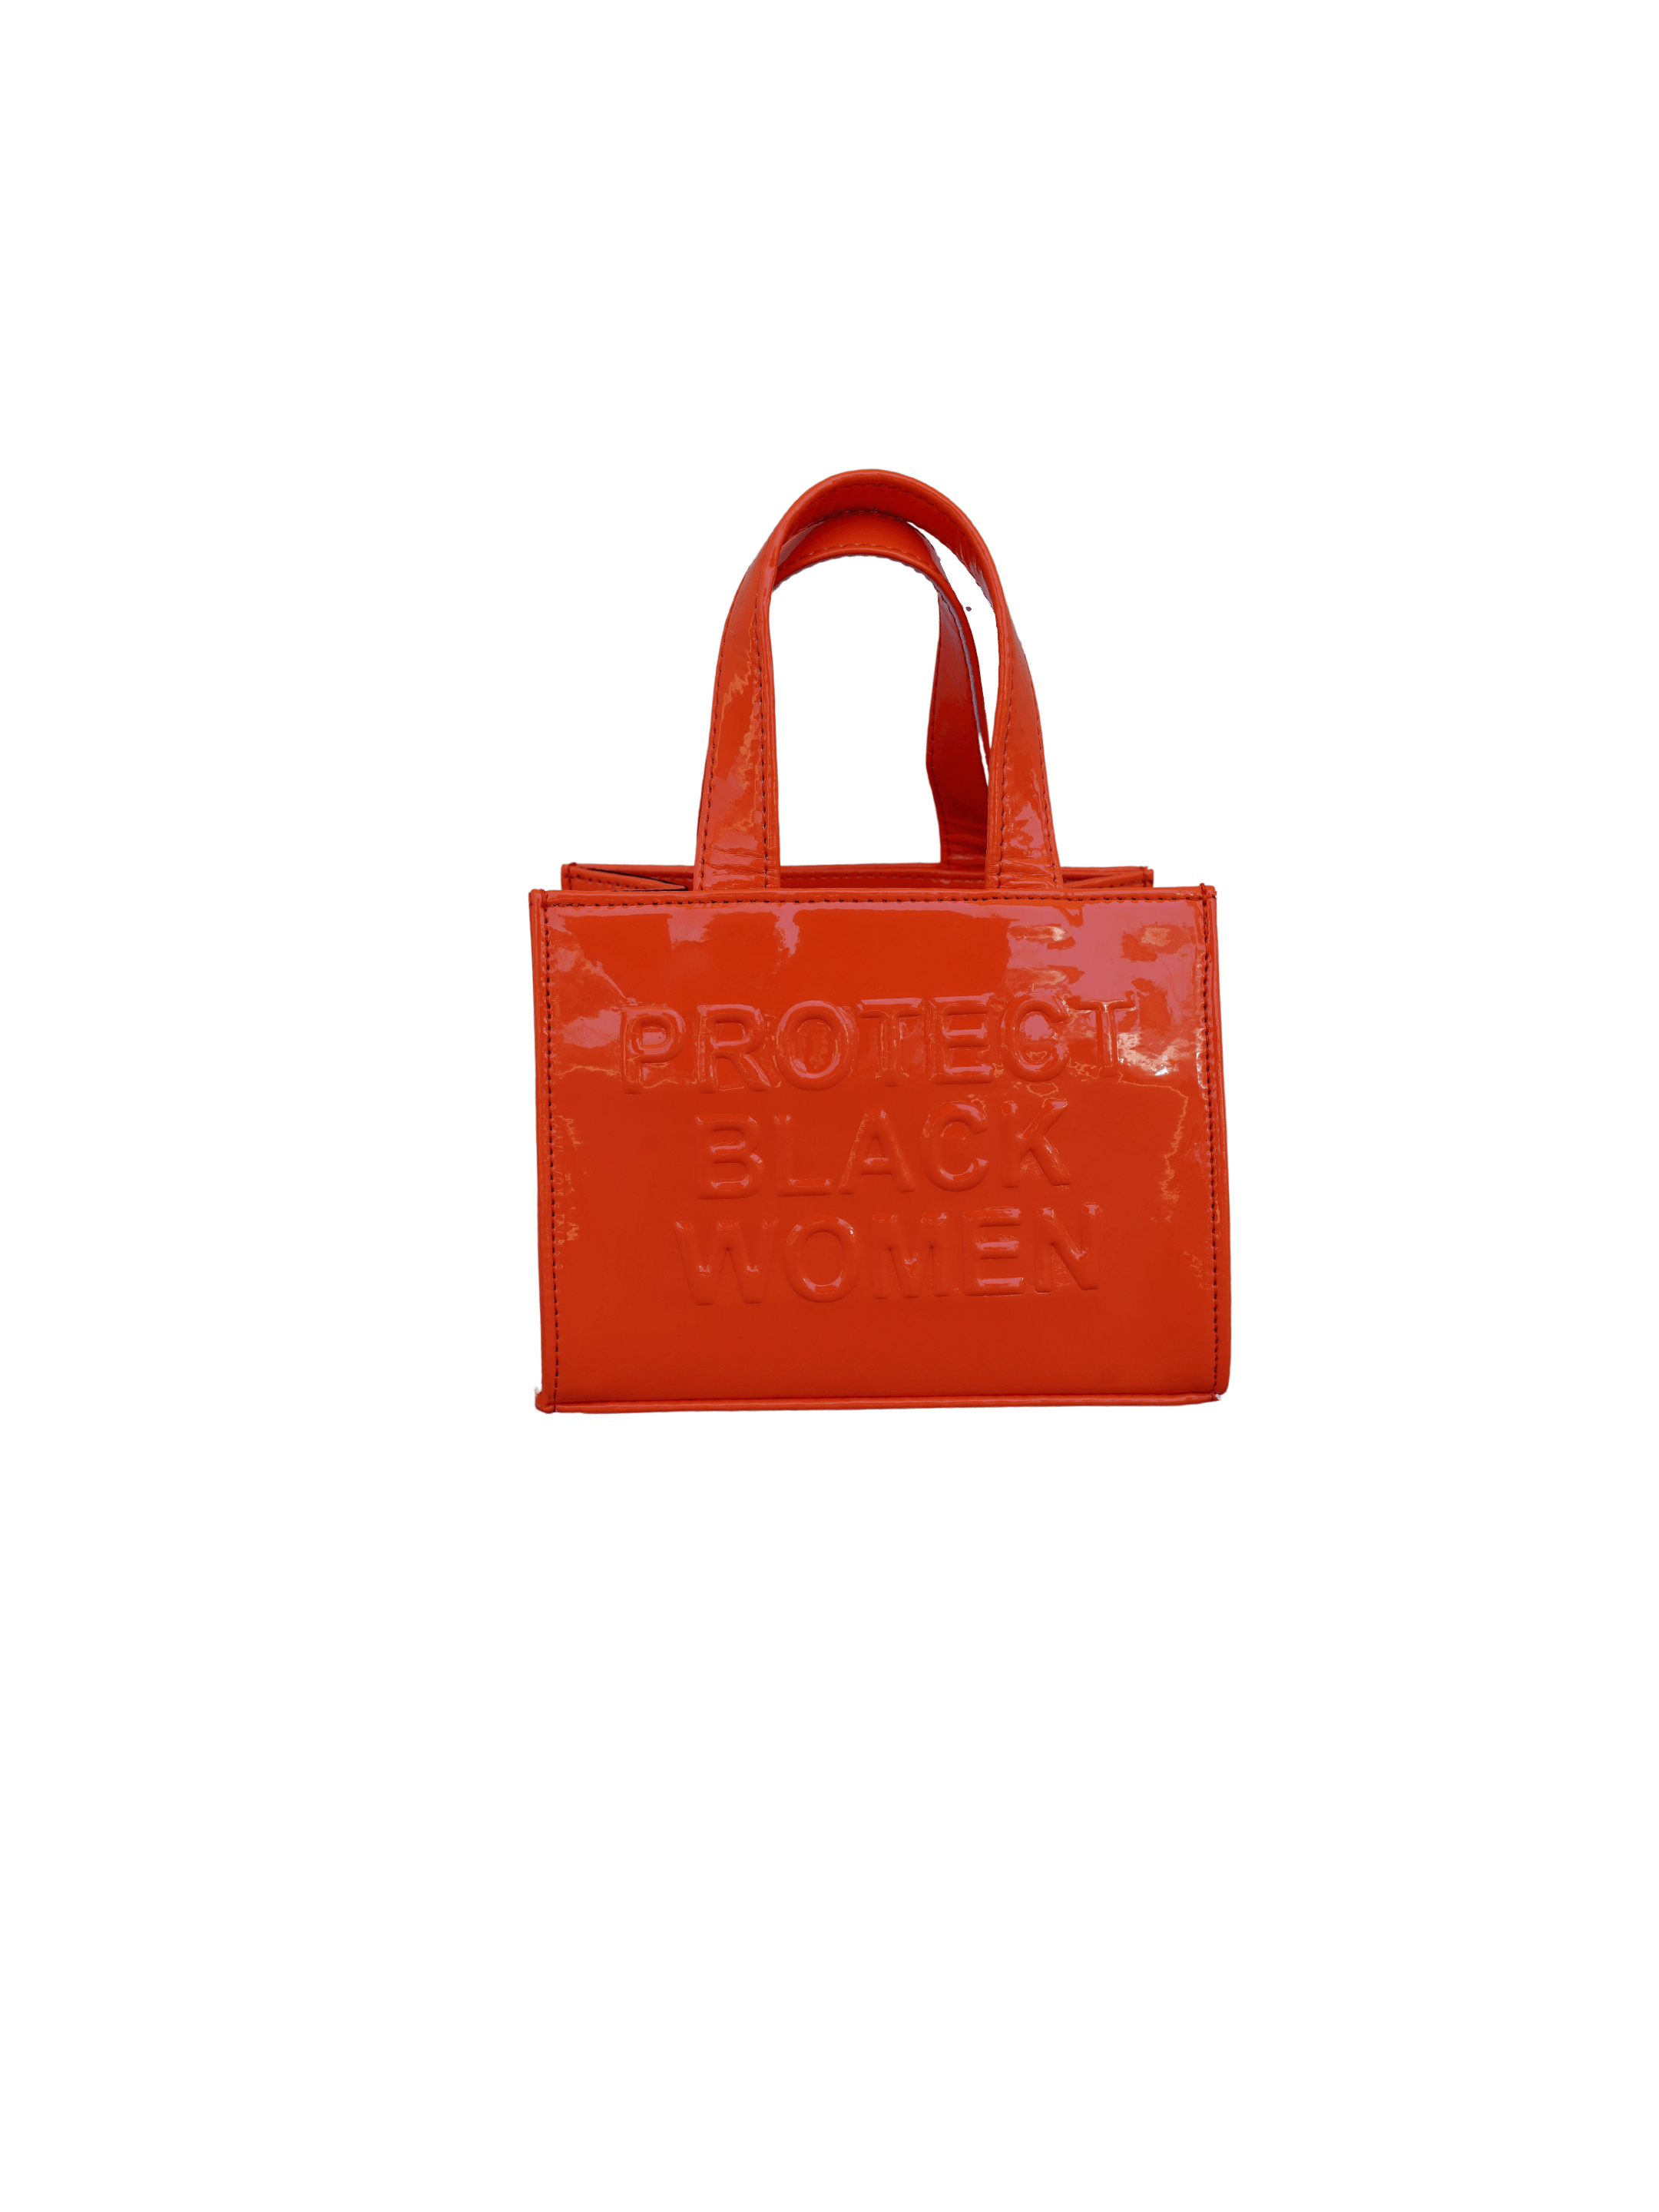 P&G PVC Bag – Klassik Michelle